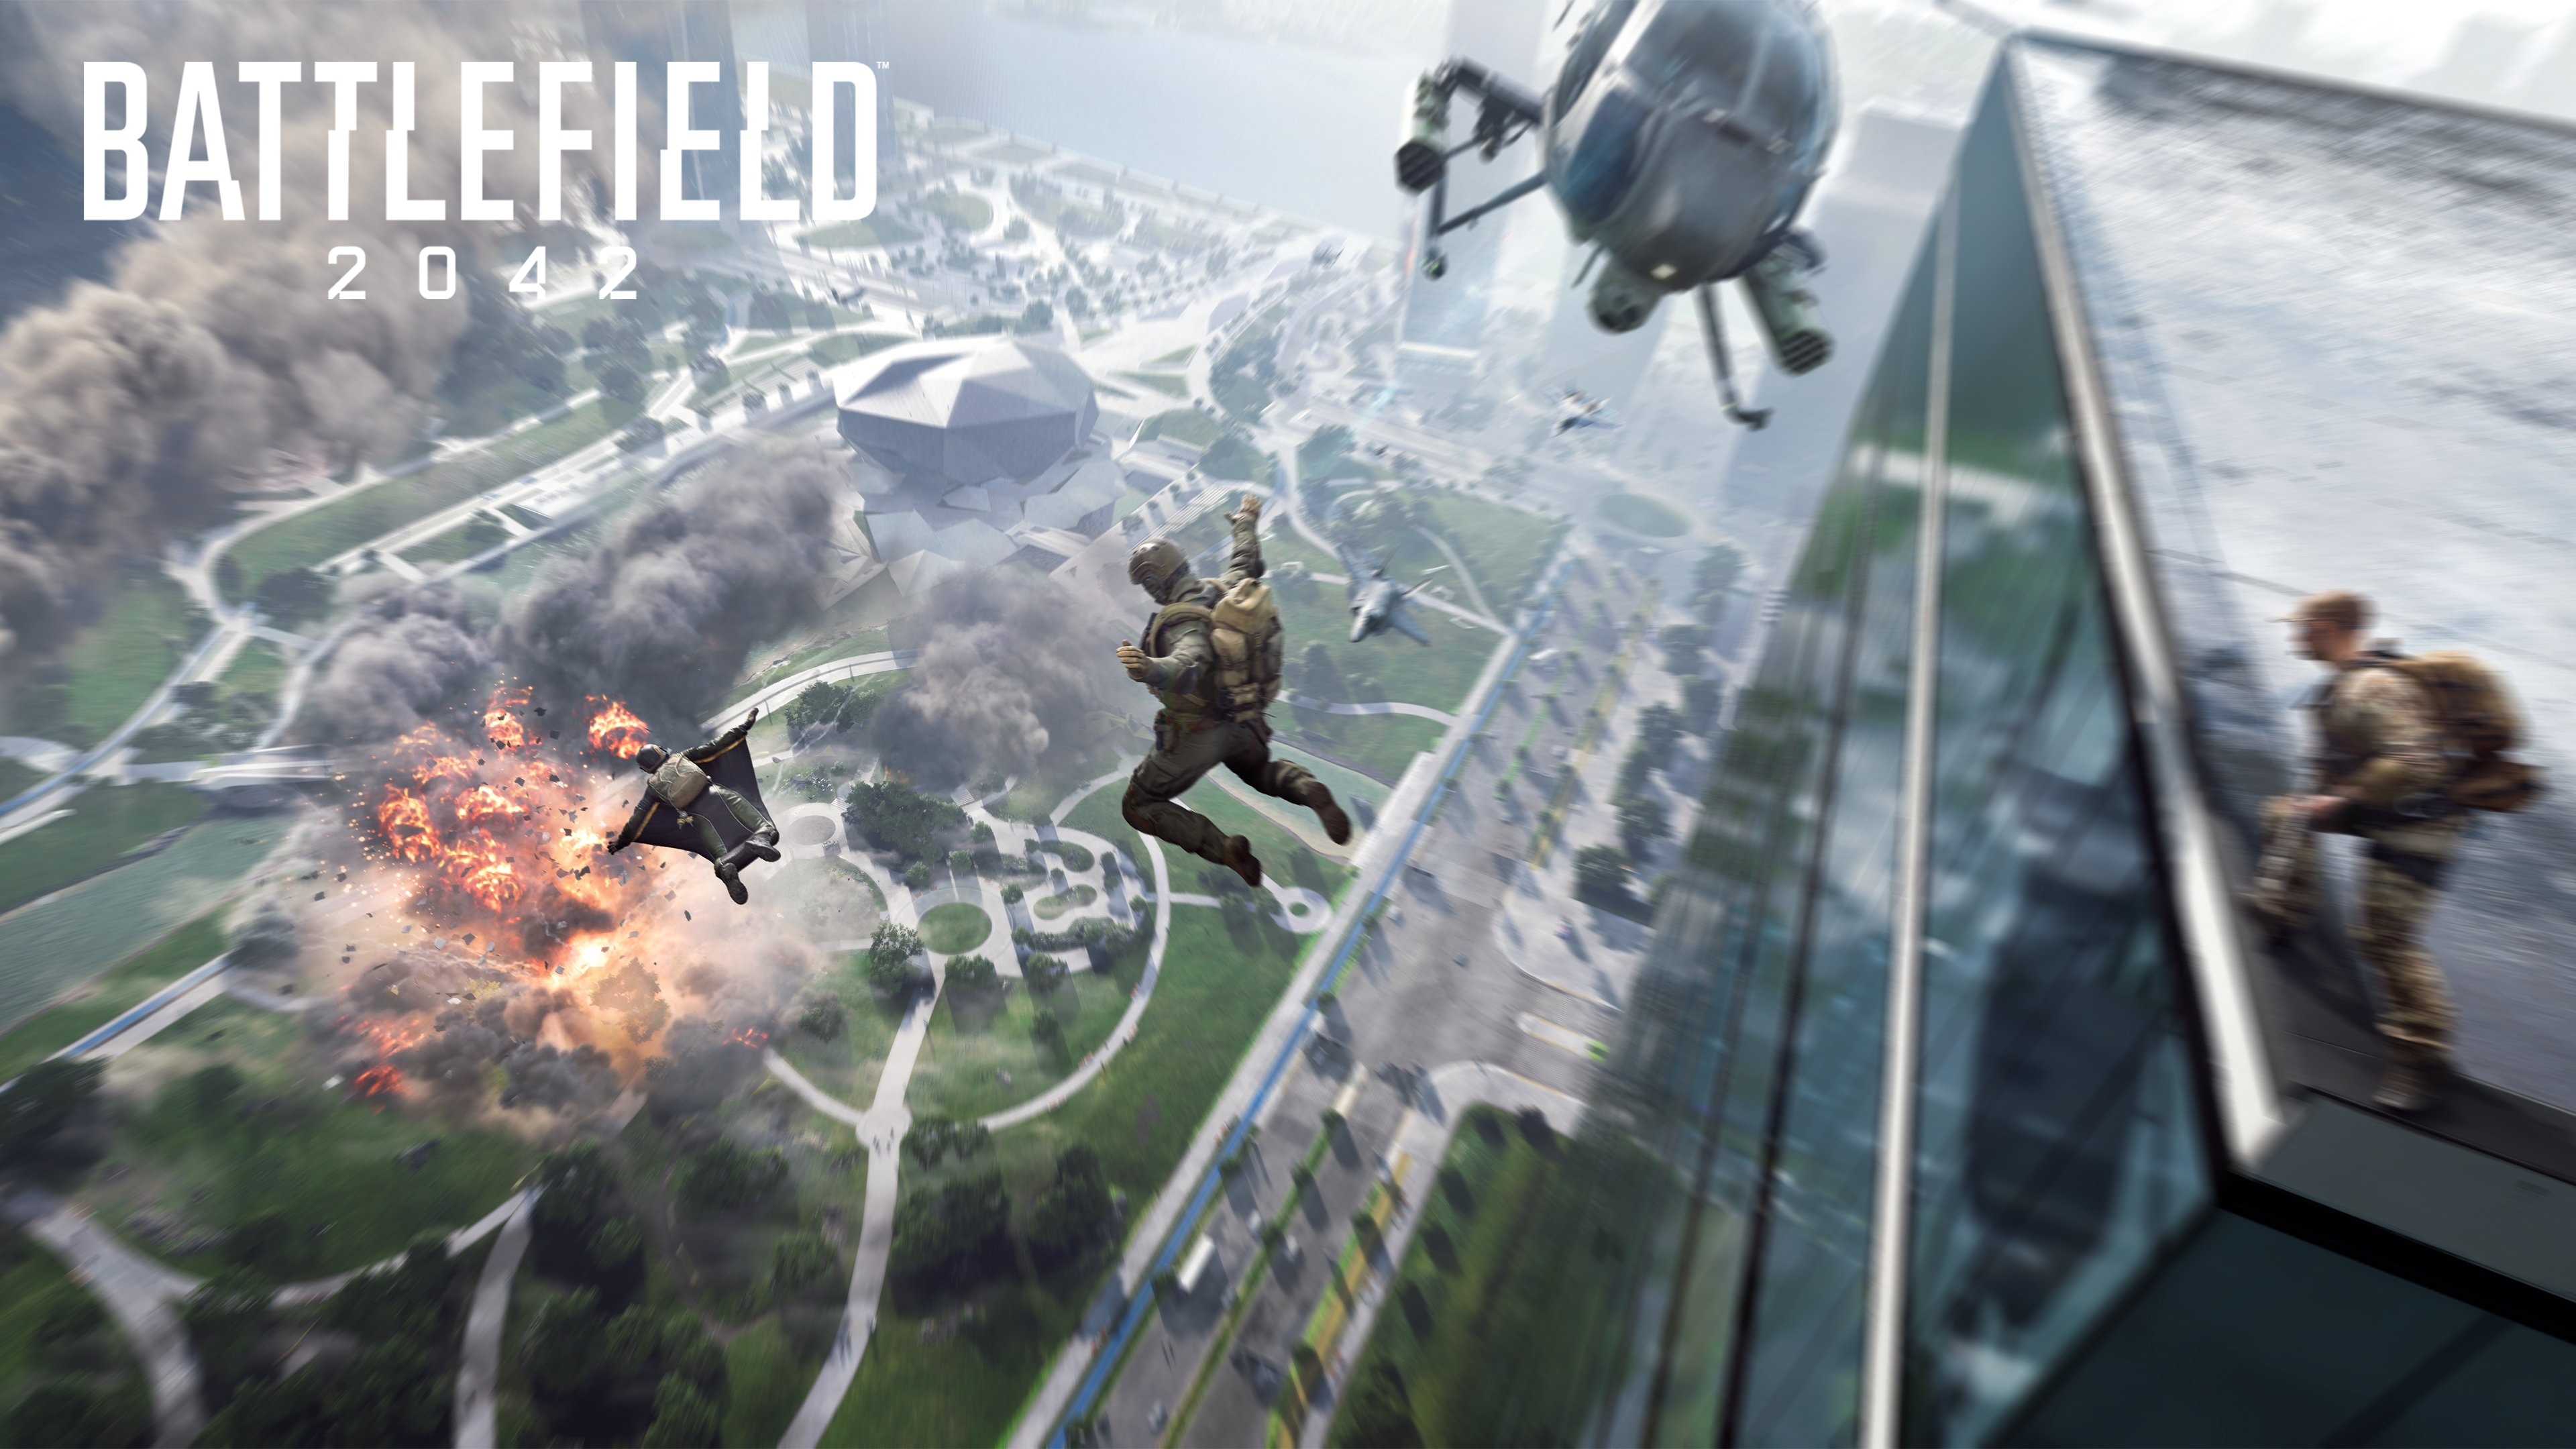 Battlefield 4k Ultra HD Wallpaper Background Image